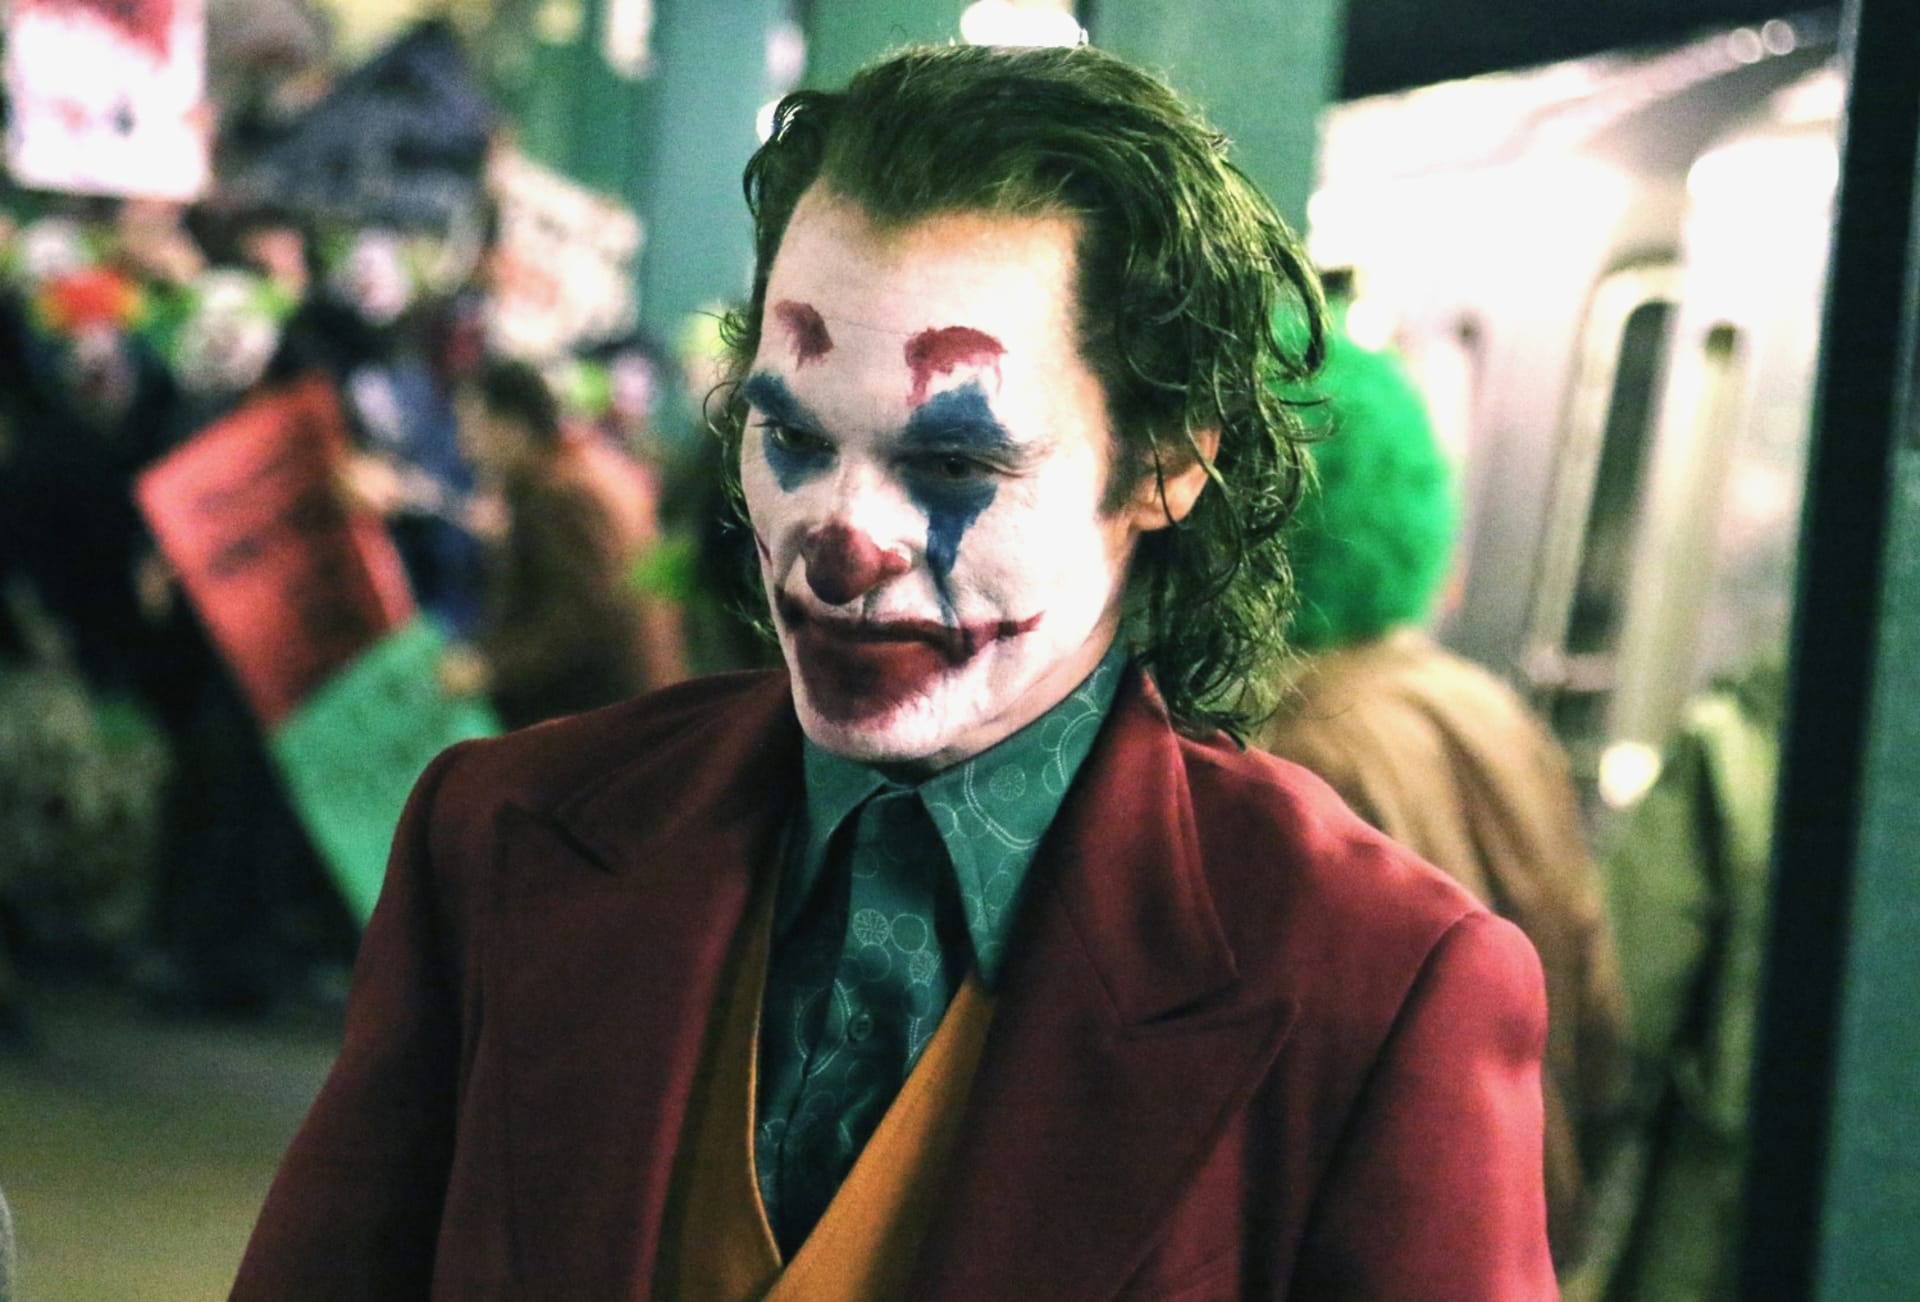 Premiéru Jokera provází obavy 1